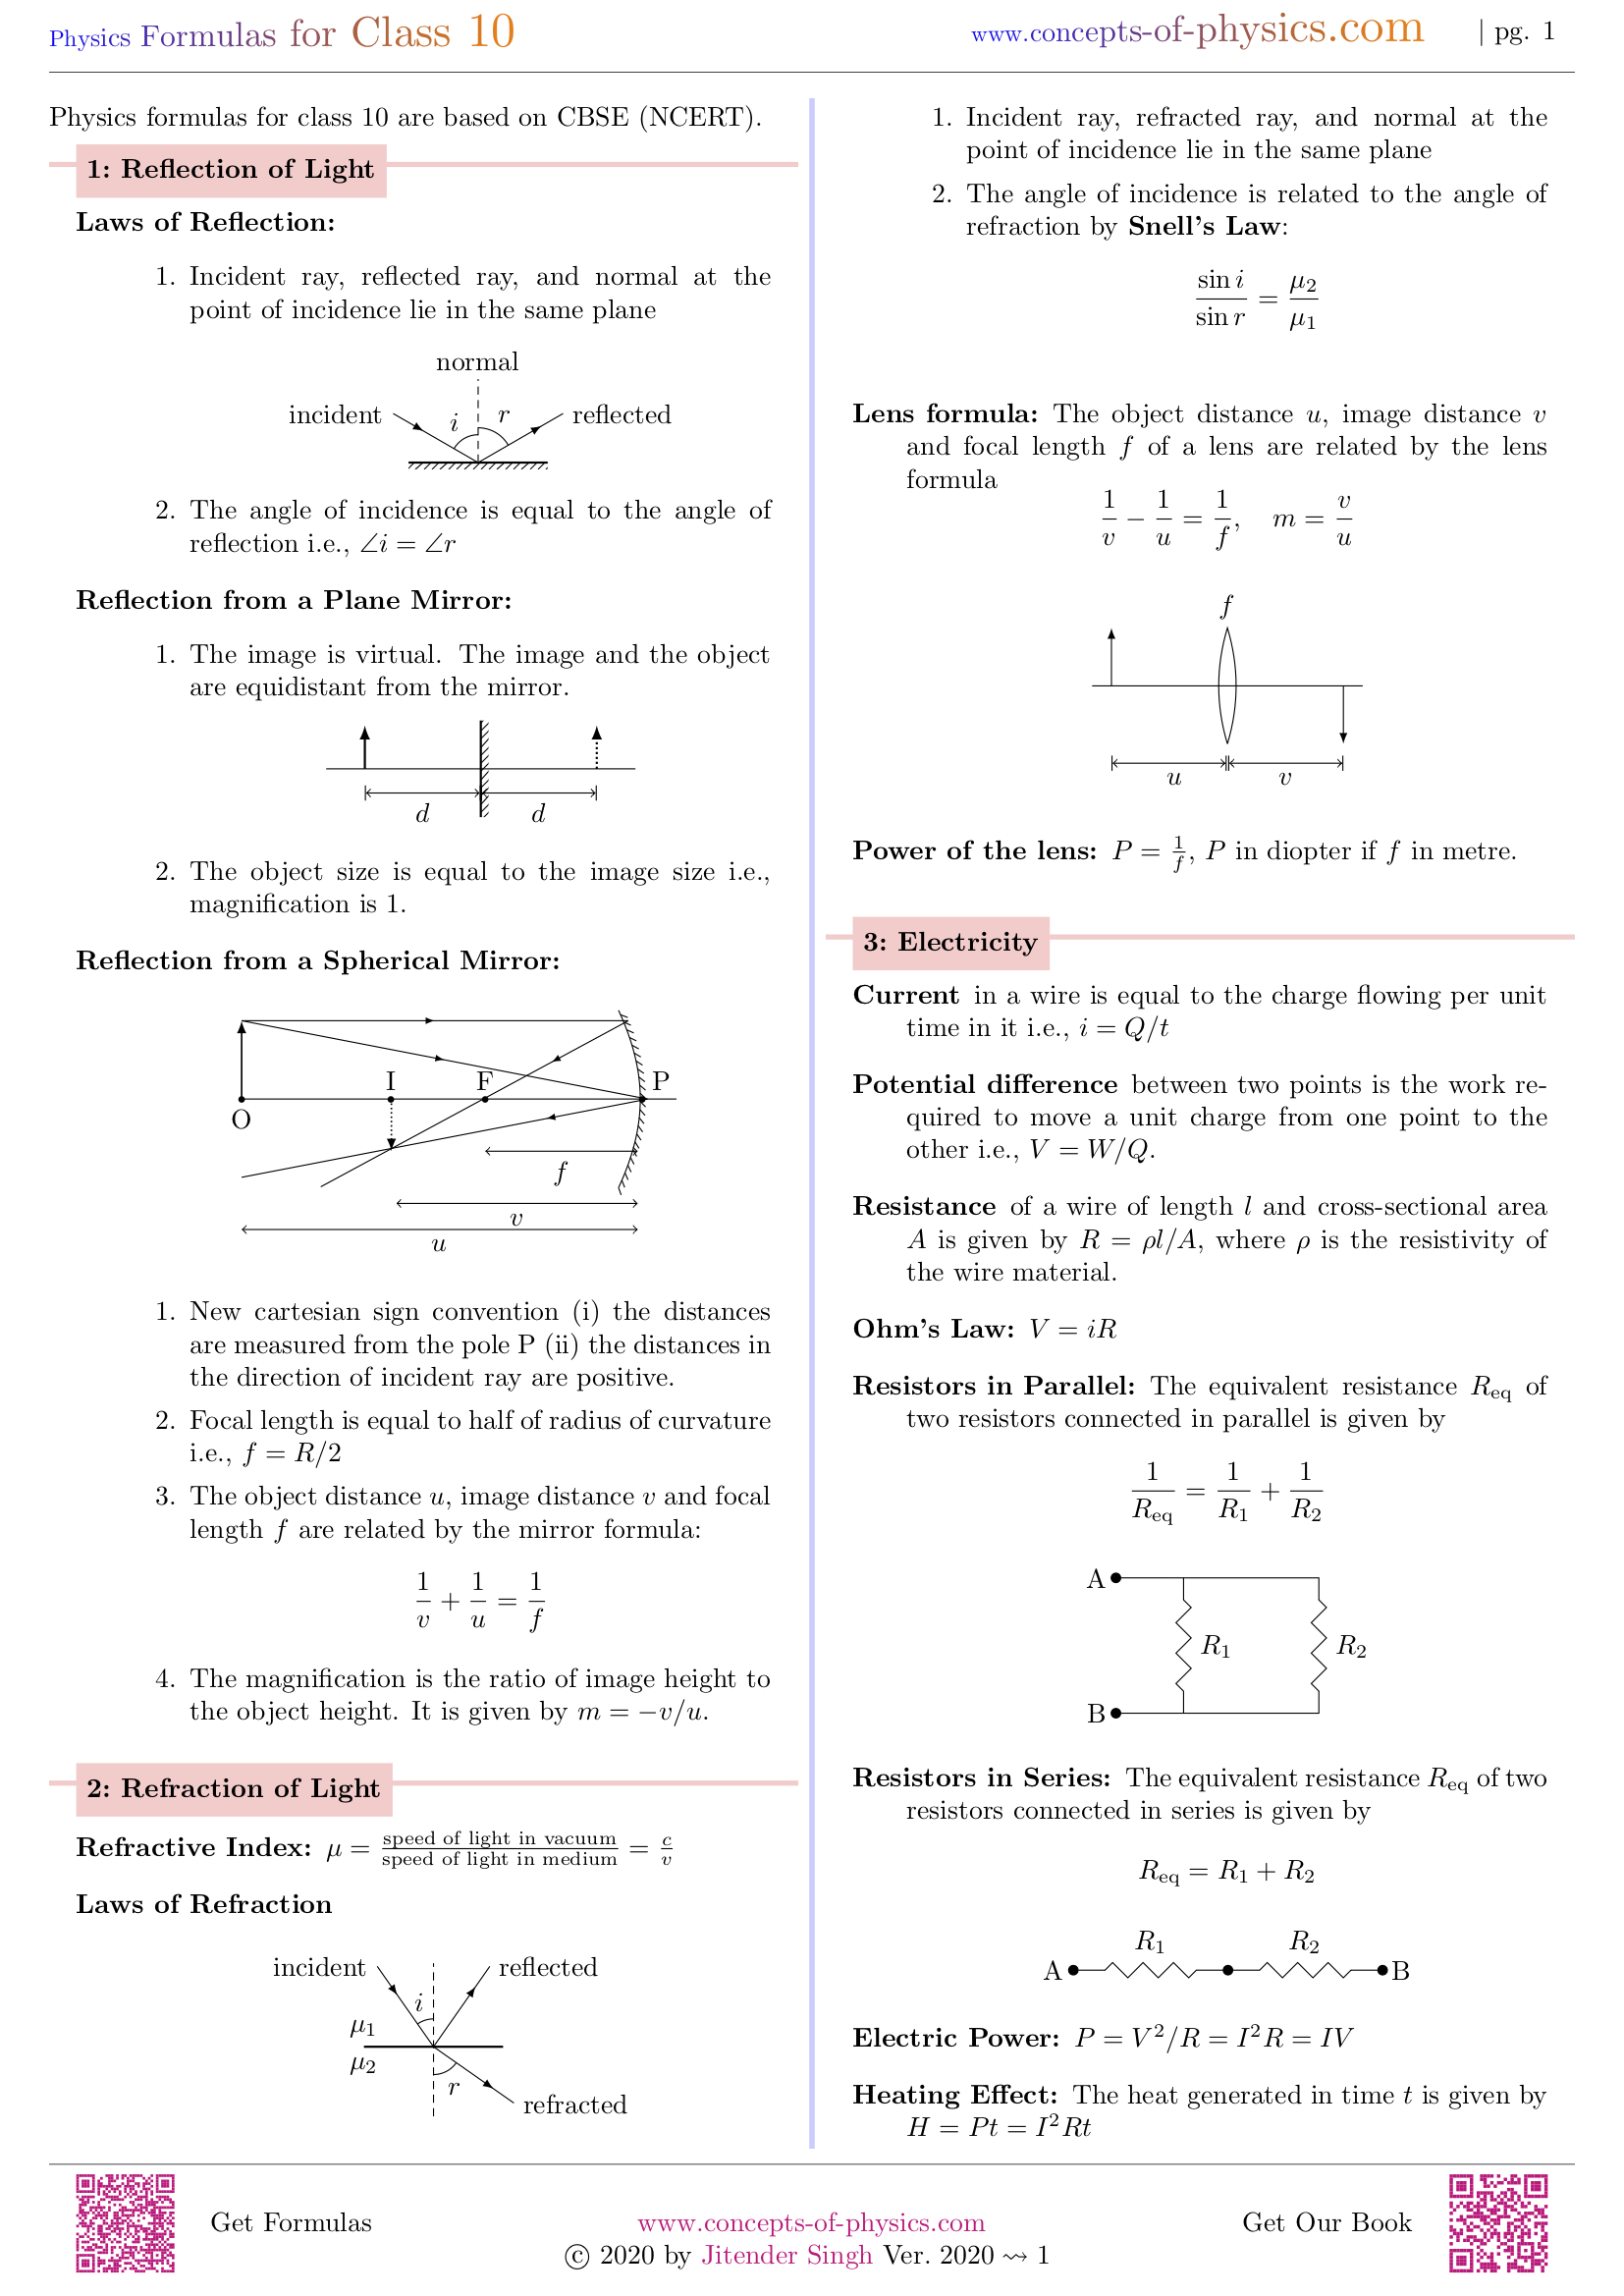 Physics Formulas For Class 10